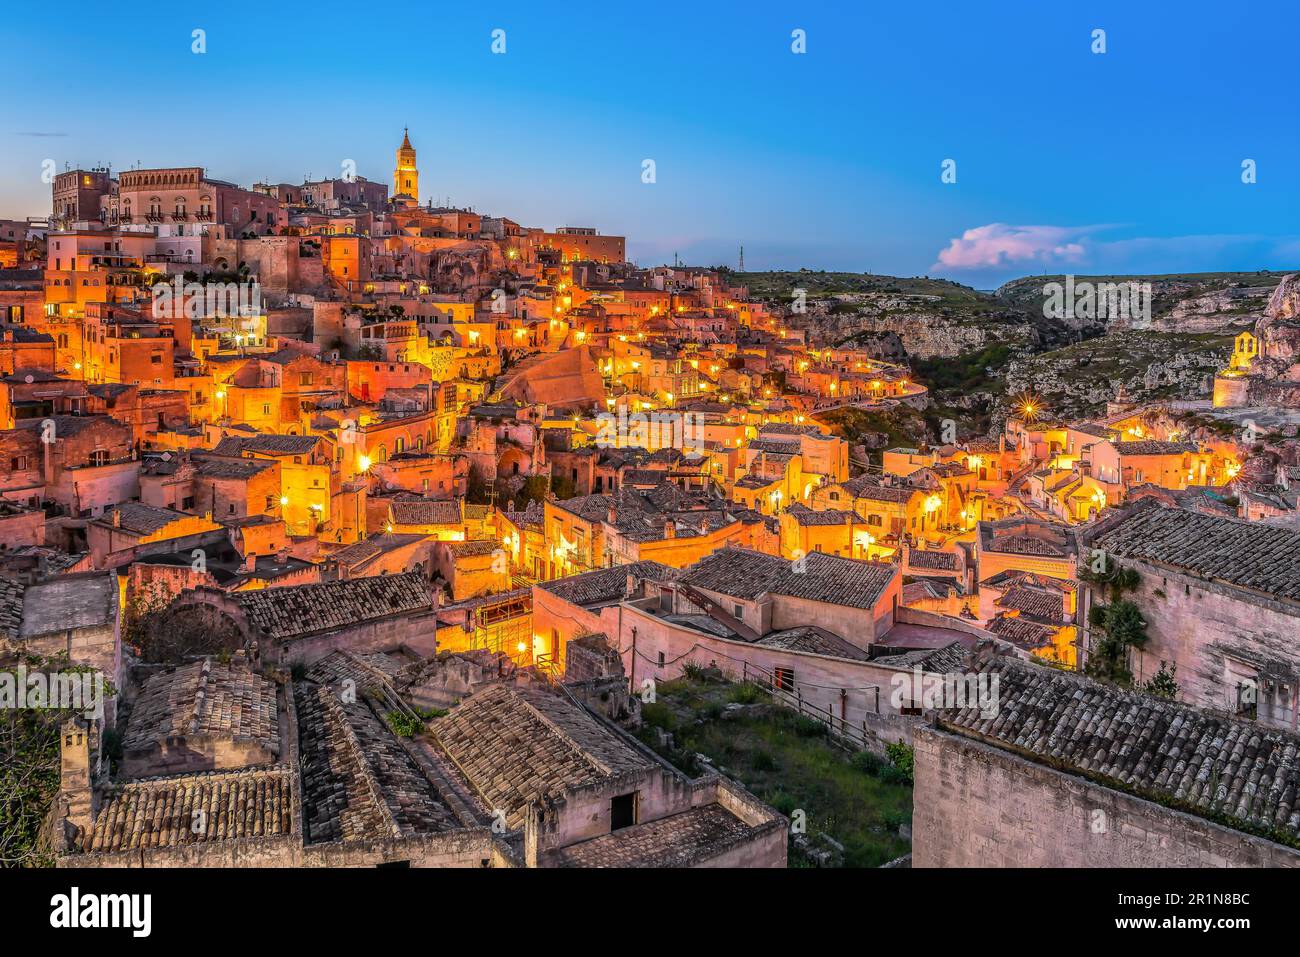 Vue panoramique de la ville de Matera à Apulia en Italie de nuit Banque D'Images